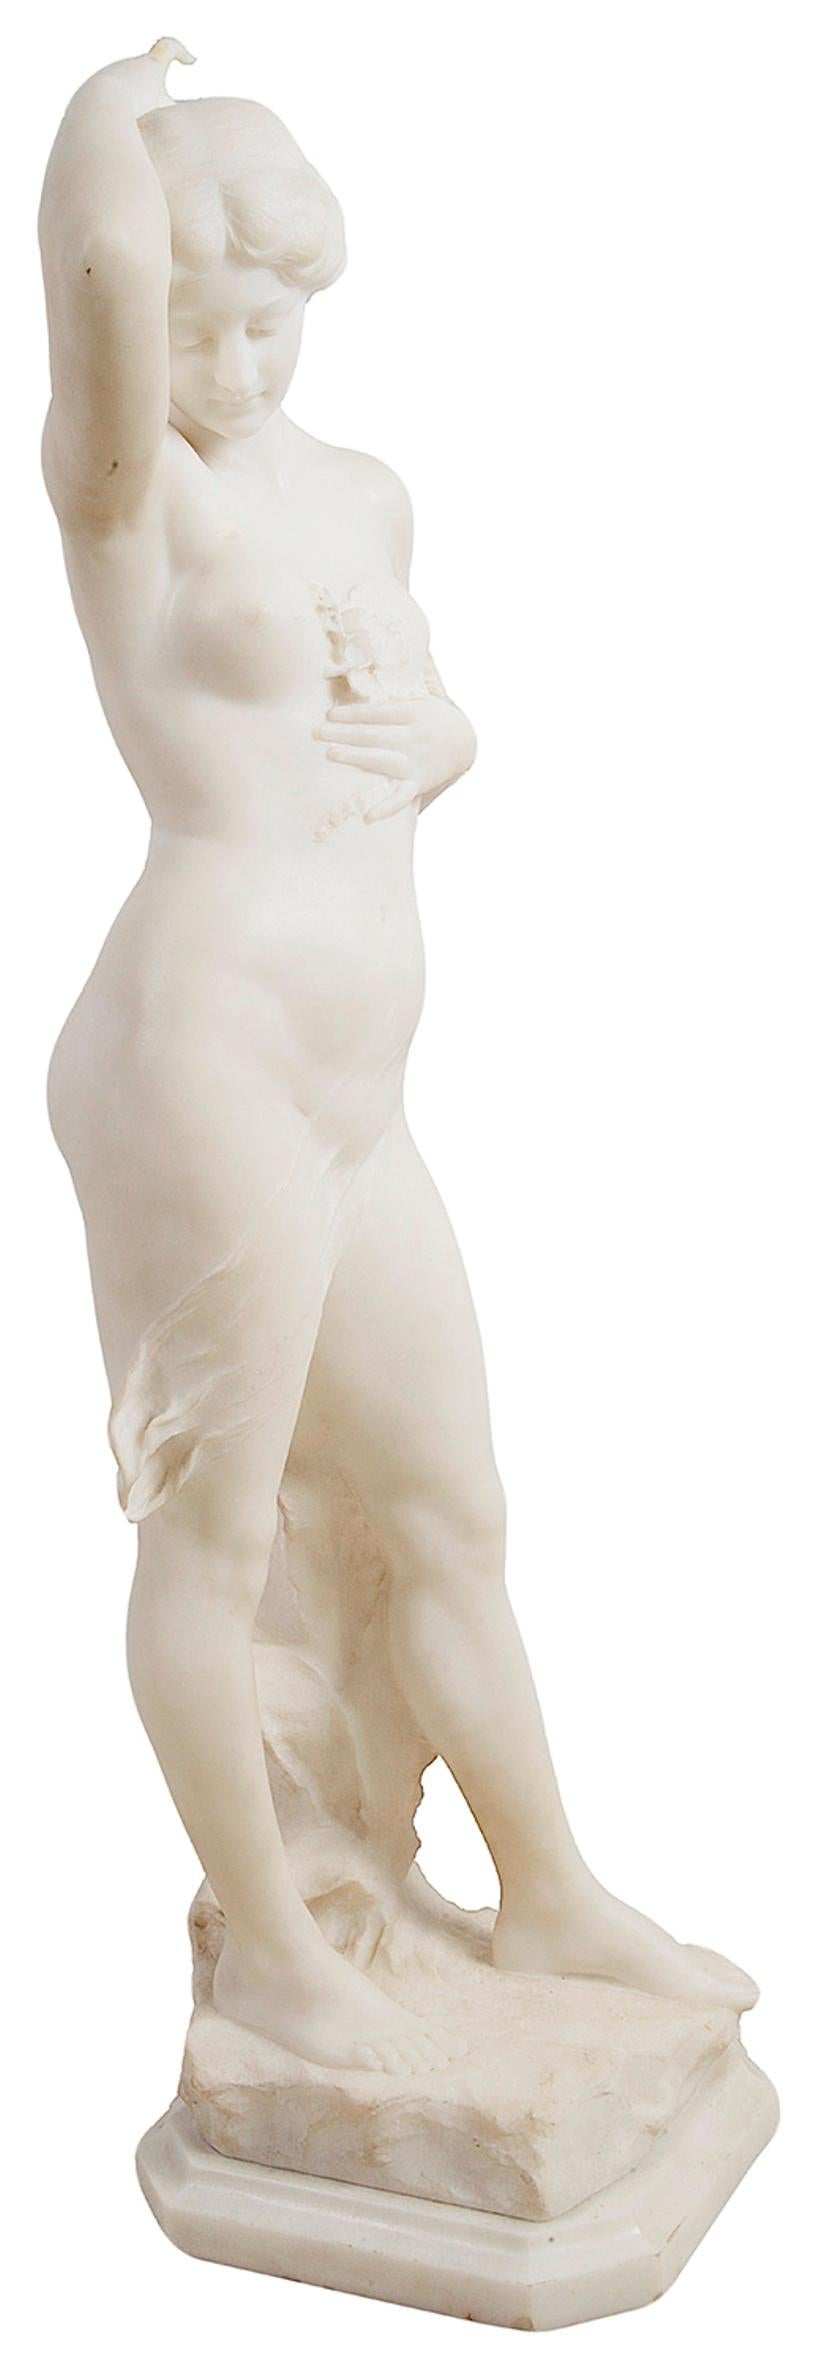 Italian 19th Century Carrera Marble Statue of a Nymph, 'Bazzanti'